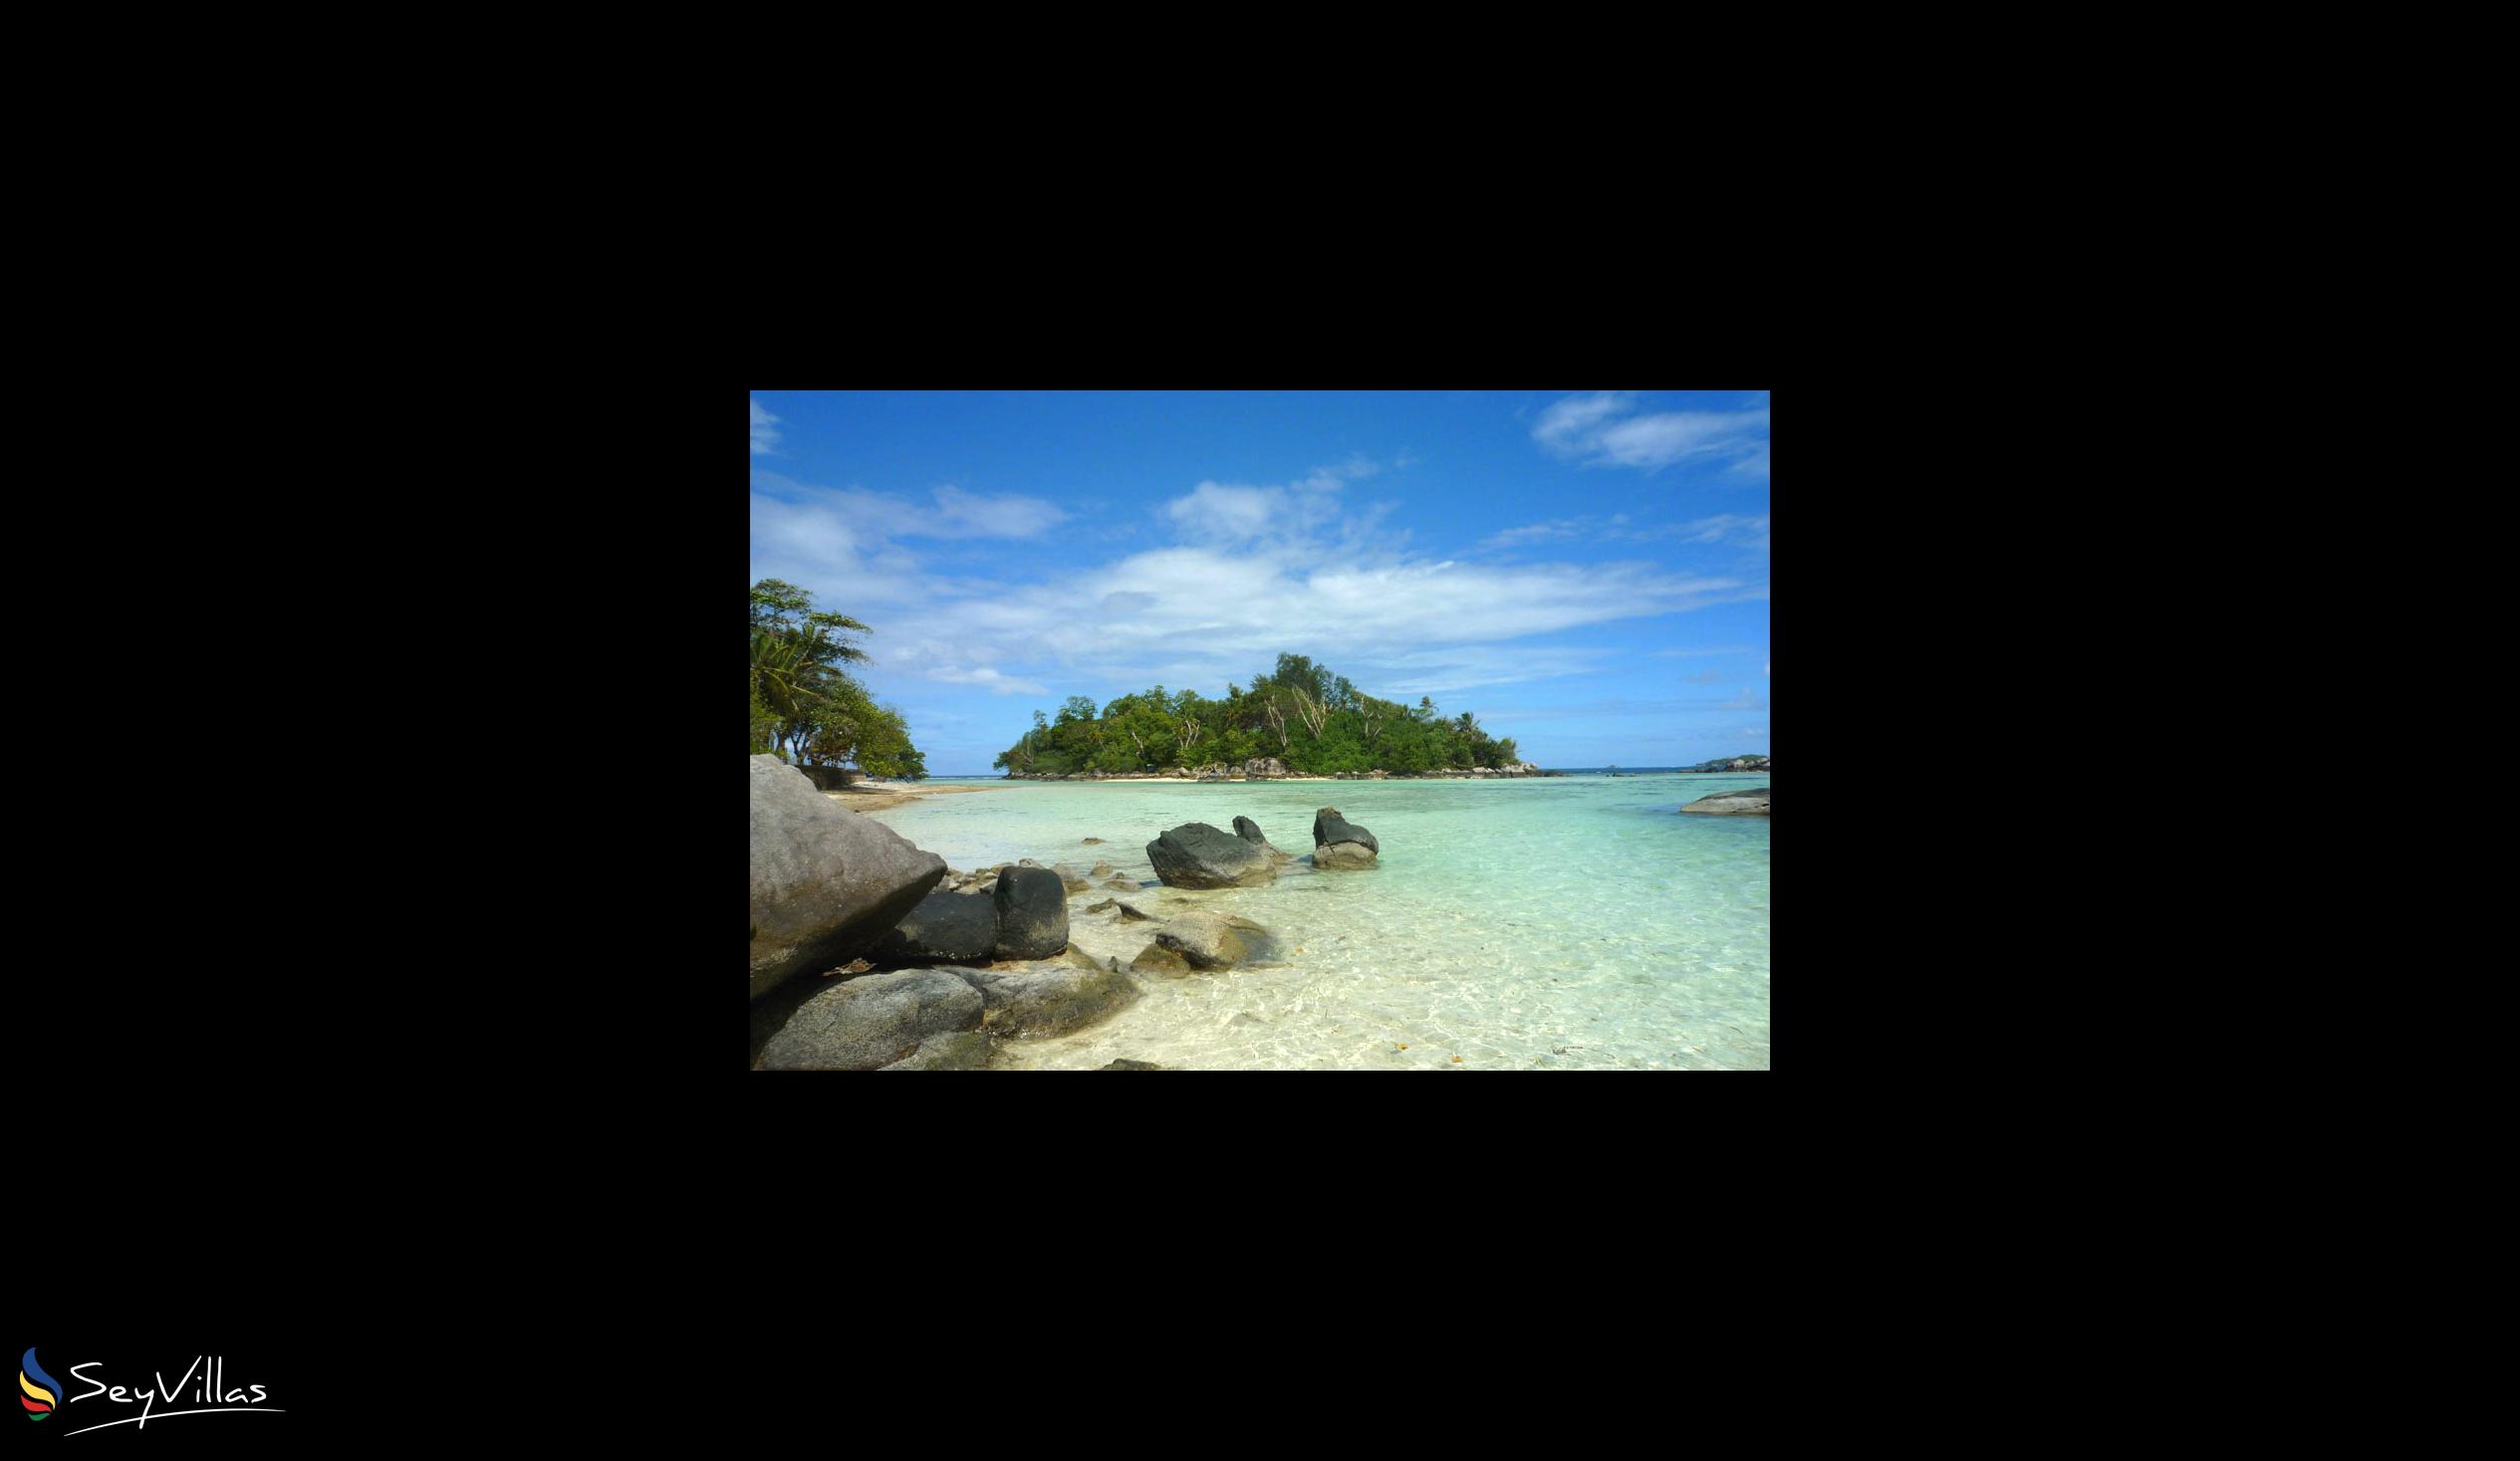 Photo 1: Île Cachée - Cerf Island (Seychelles)